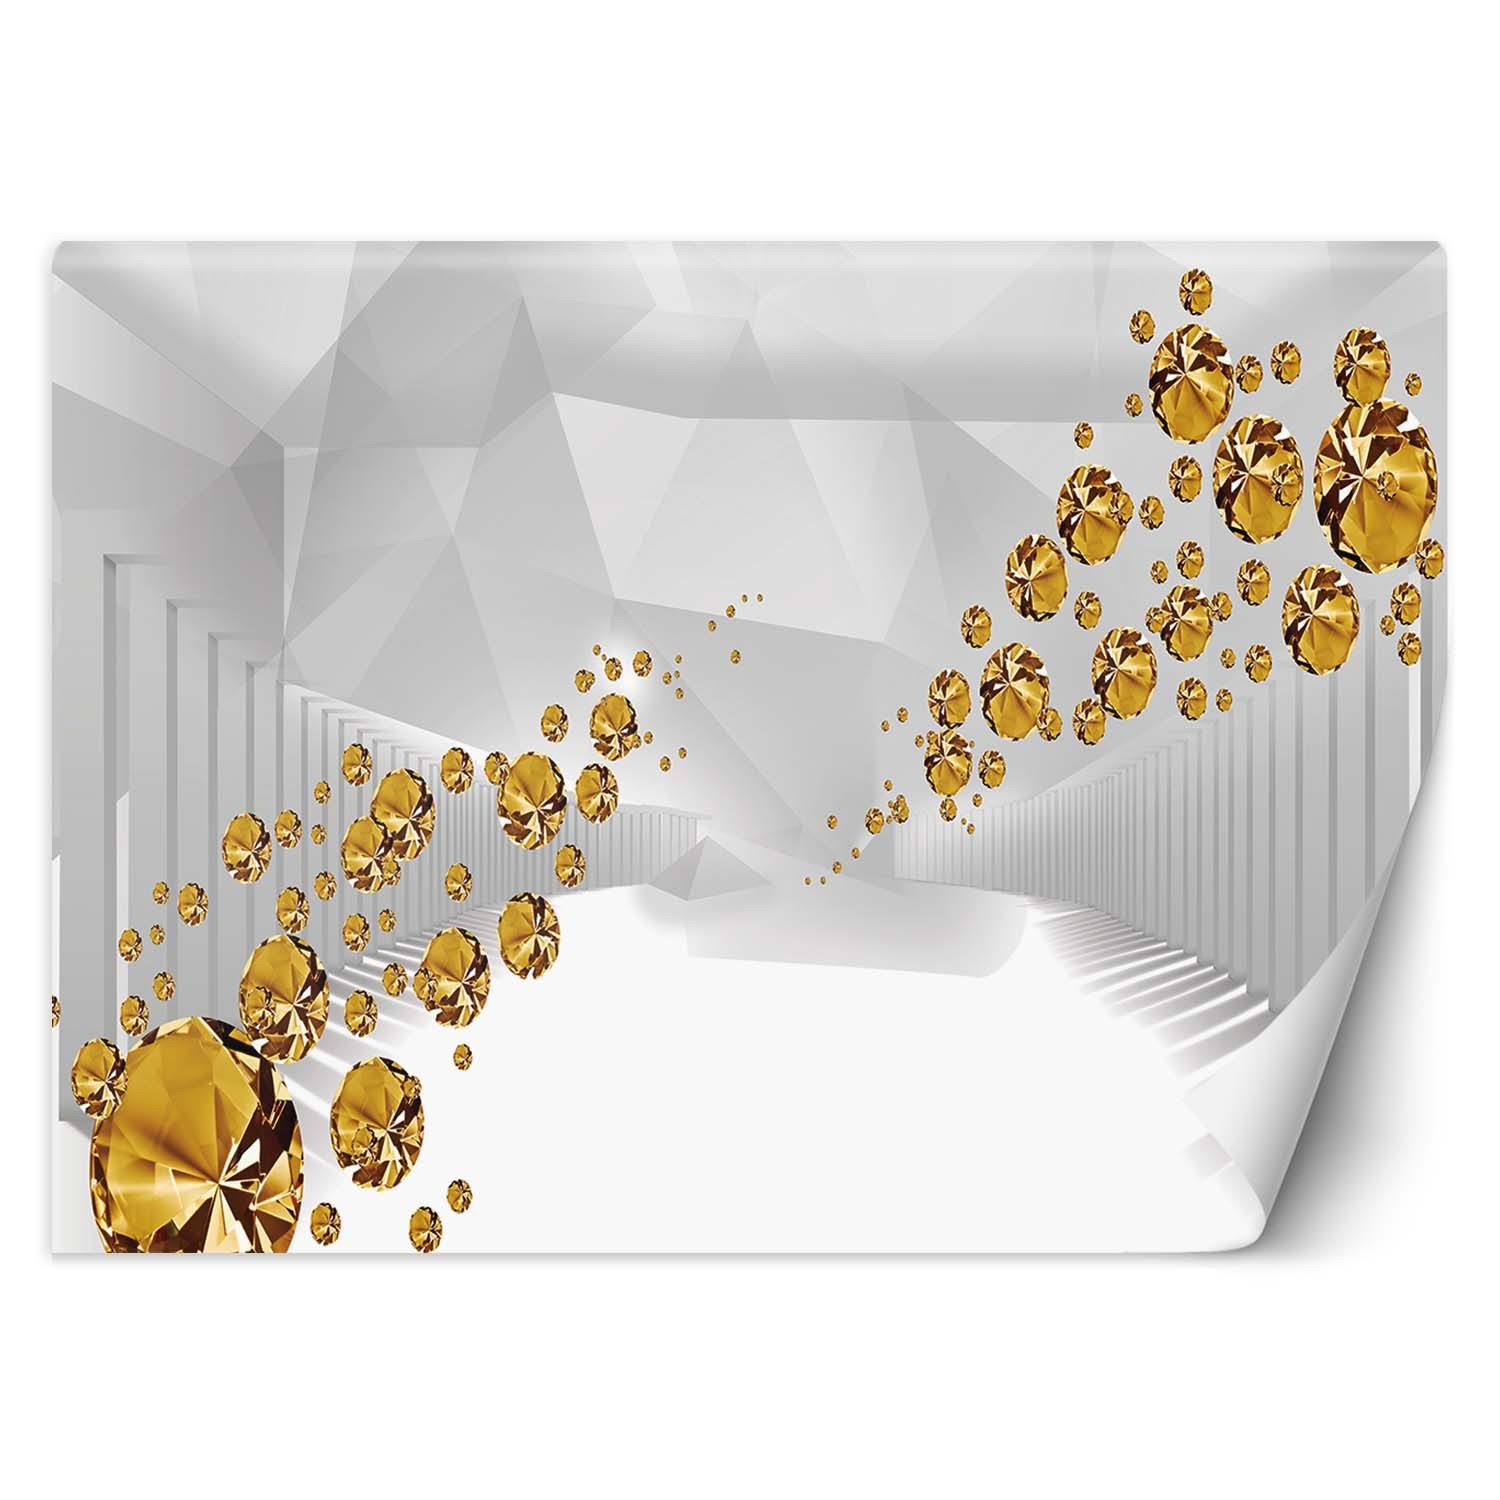 Trend24 – Behang – Gouden Stenen In Een Abstracte Tunnel – Vliesbehang – Fotobehang 3D – Behang Woonkamer – 350x245x2 cm – Incl. behanglijm